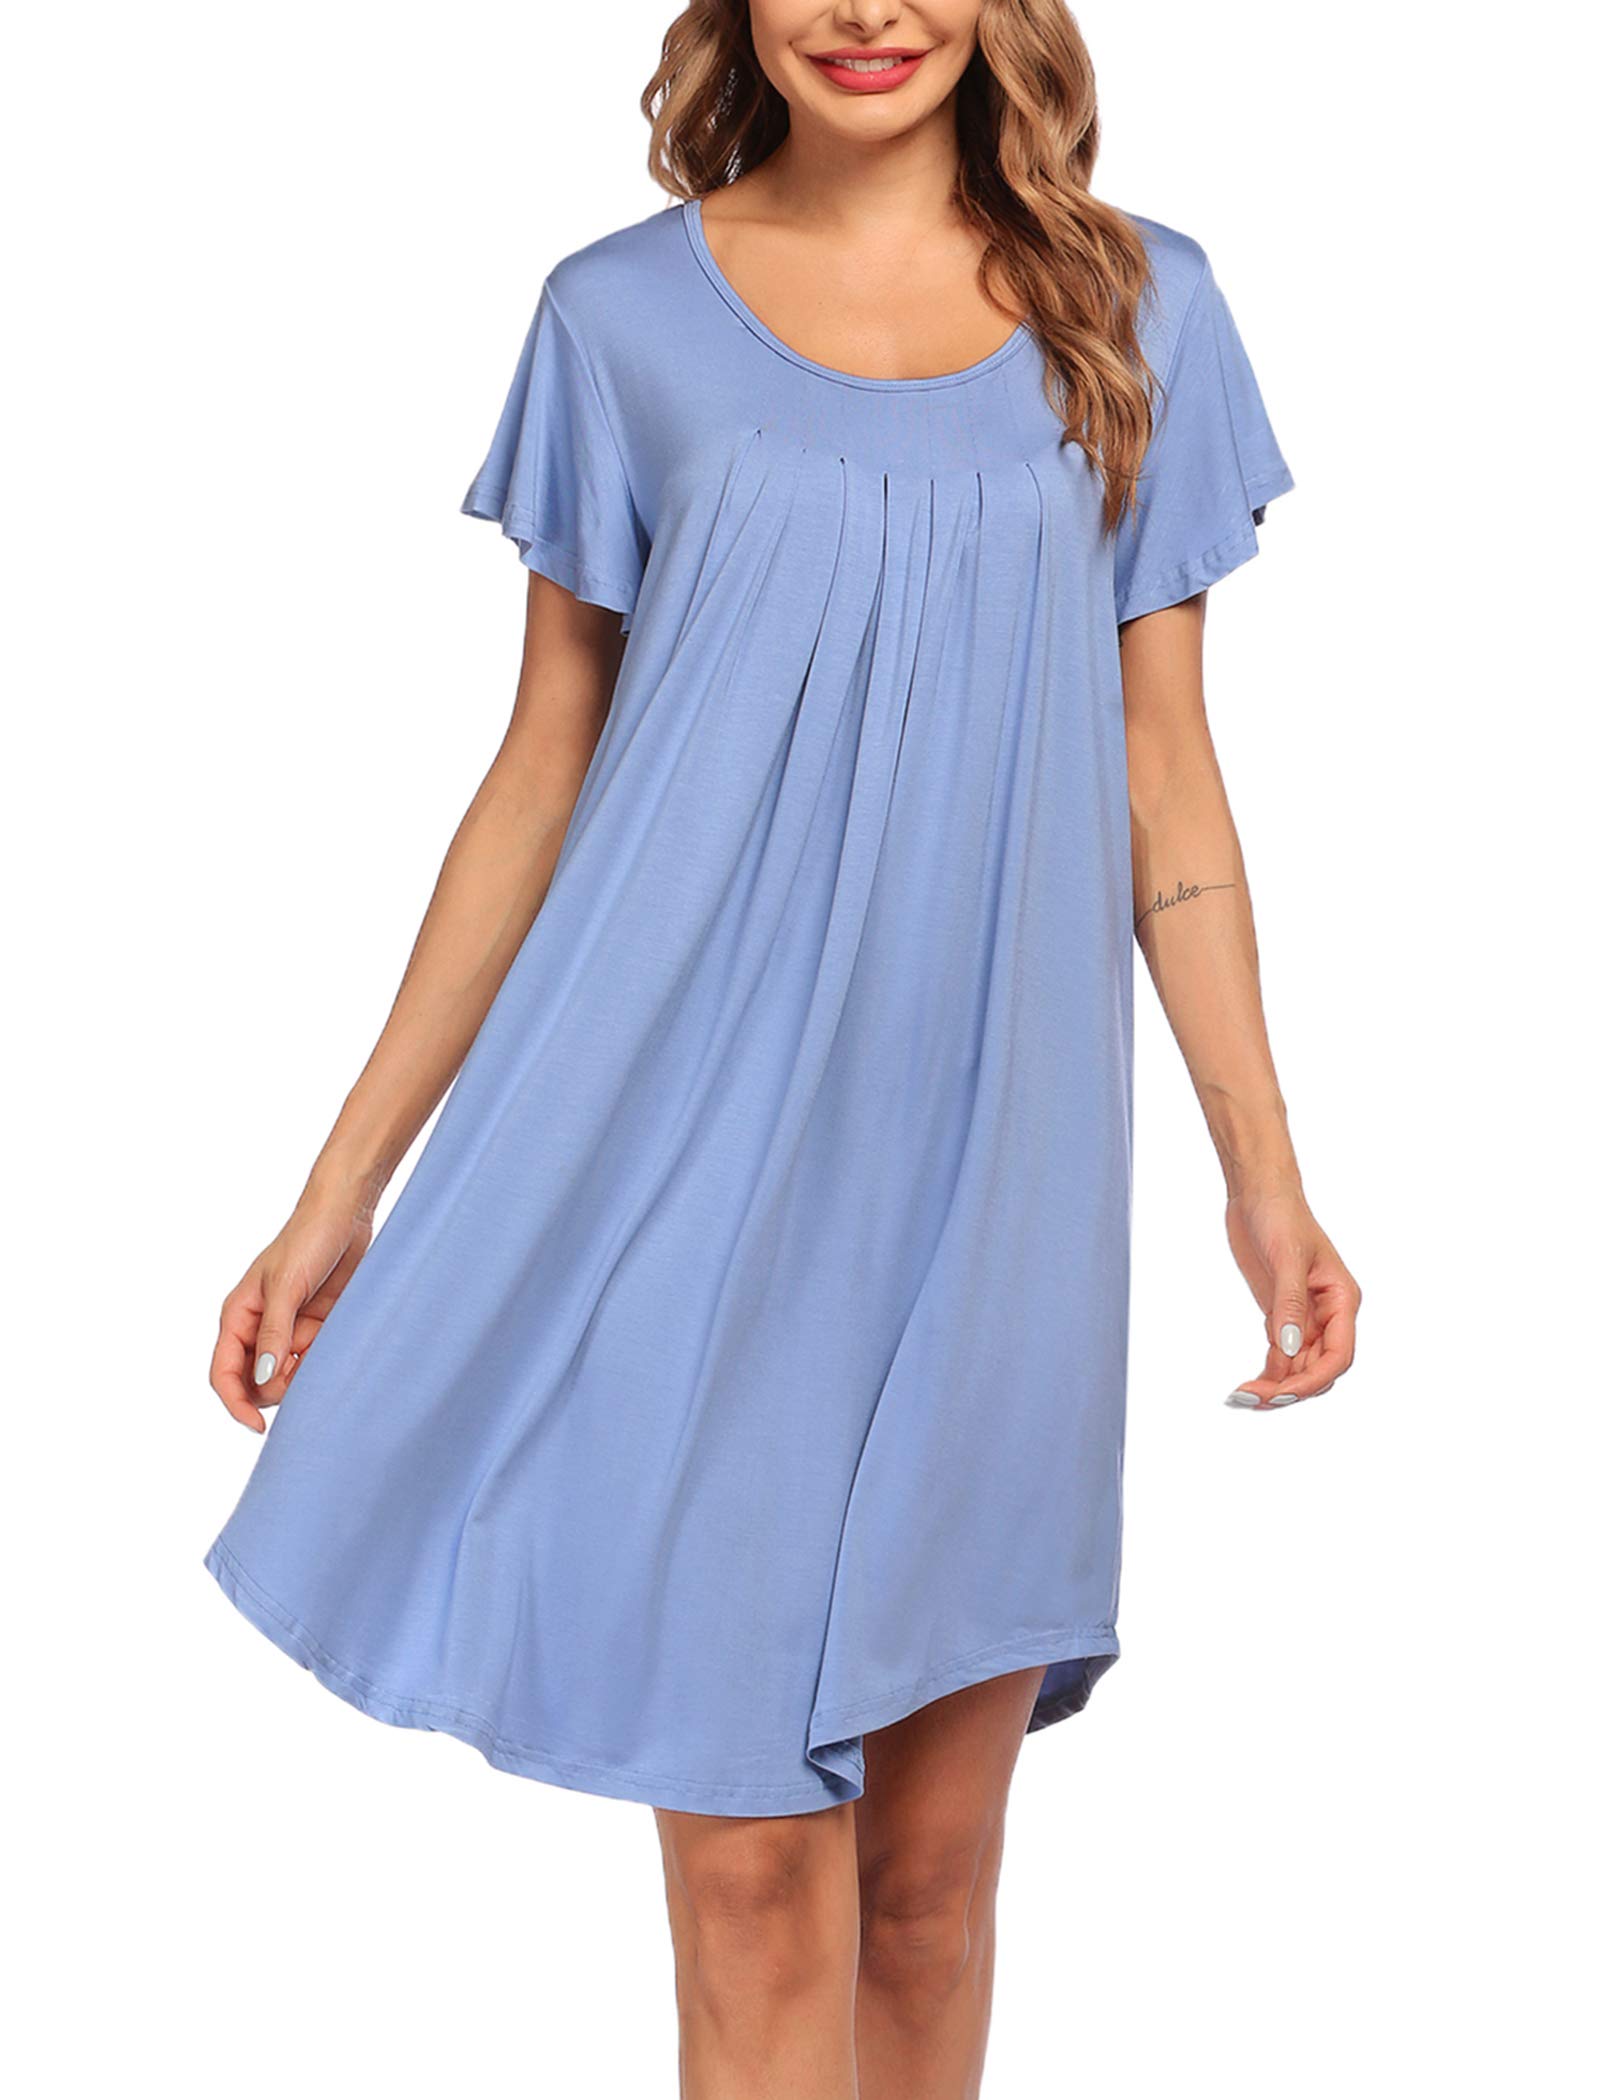 Эмэгтэй унтлагын цамц Зөөлөн унтлагын хувцас (45)